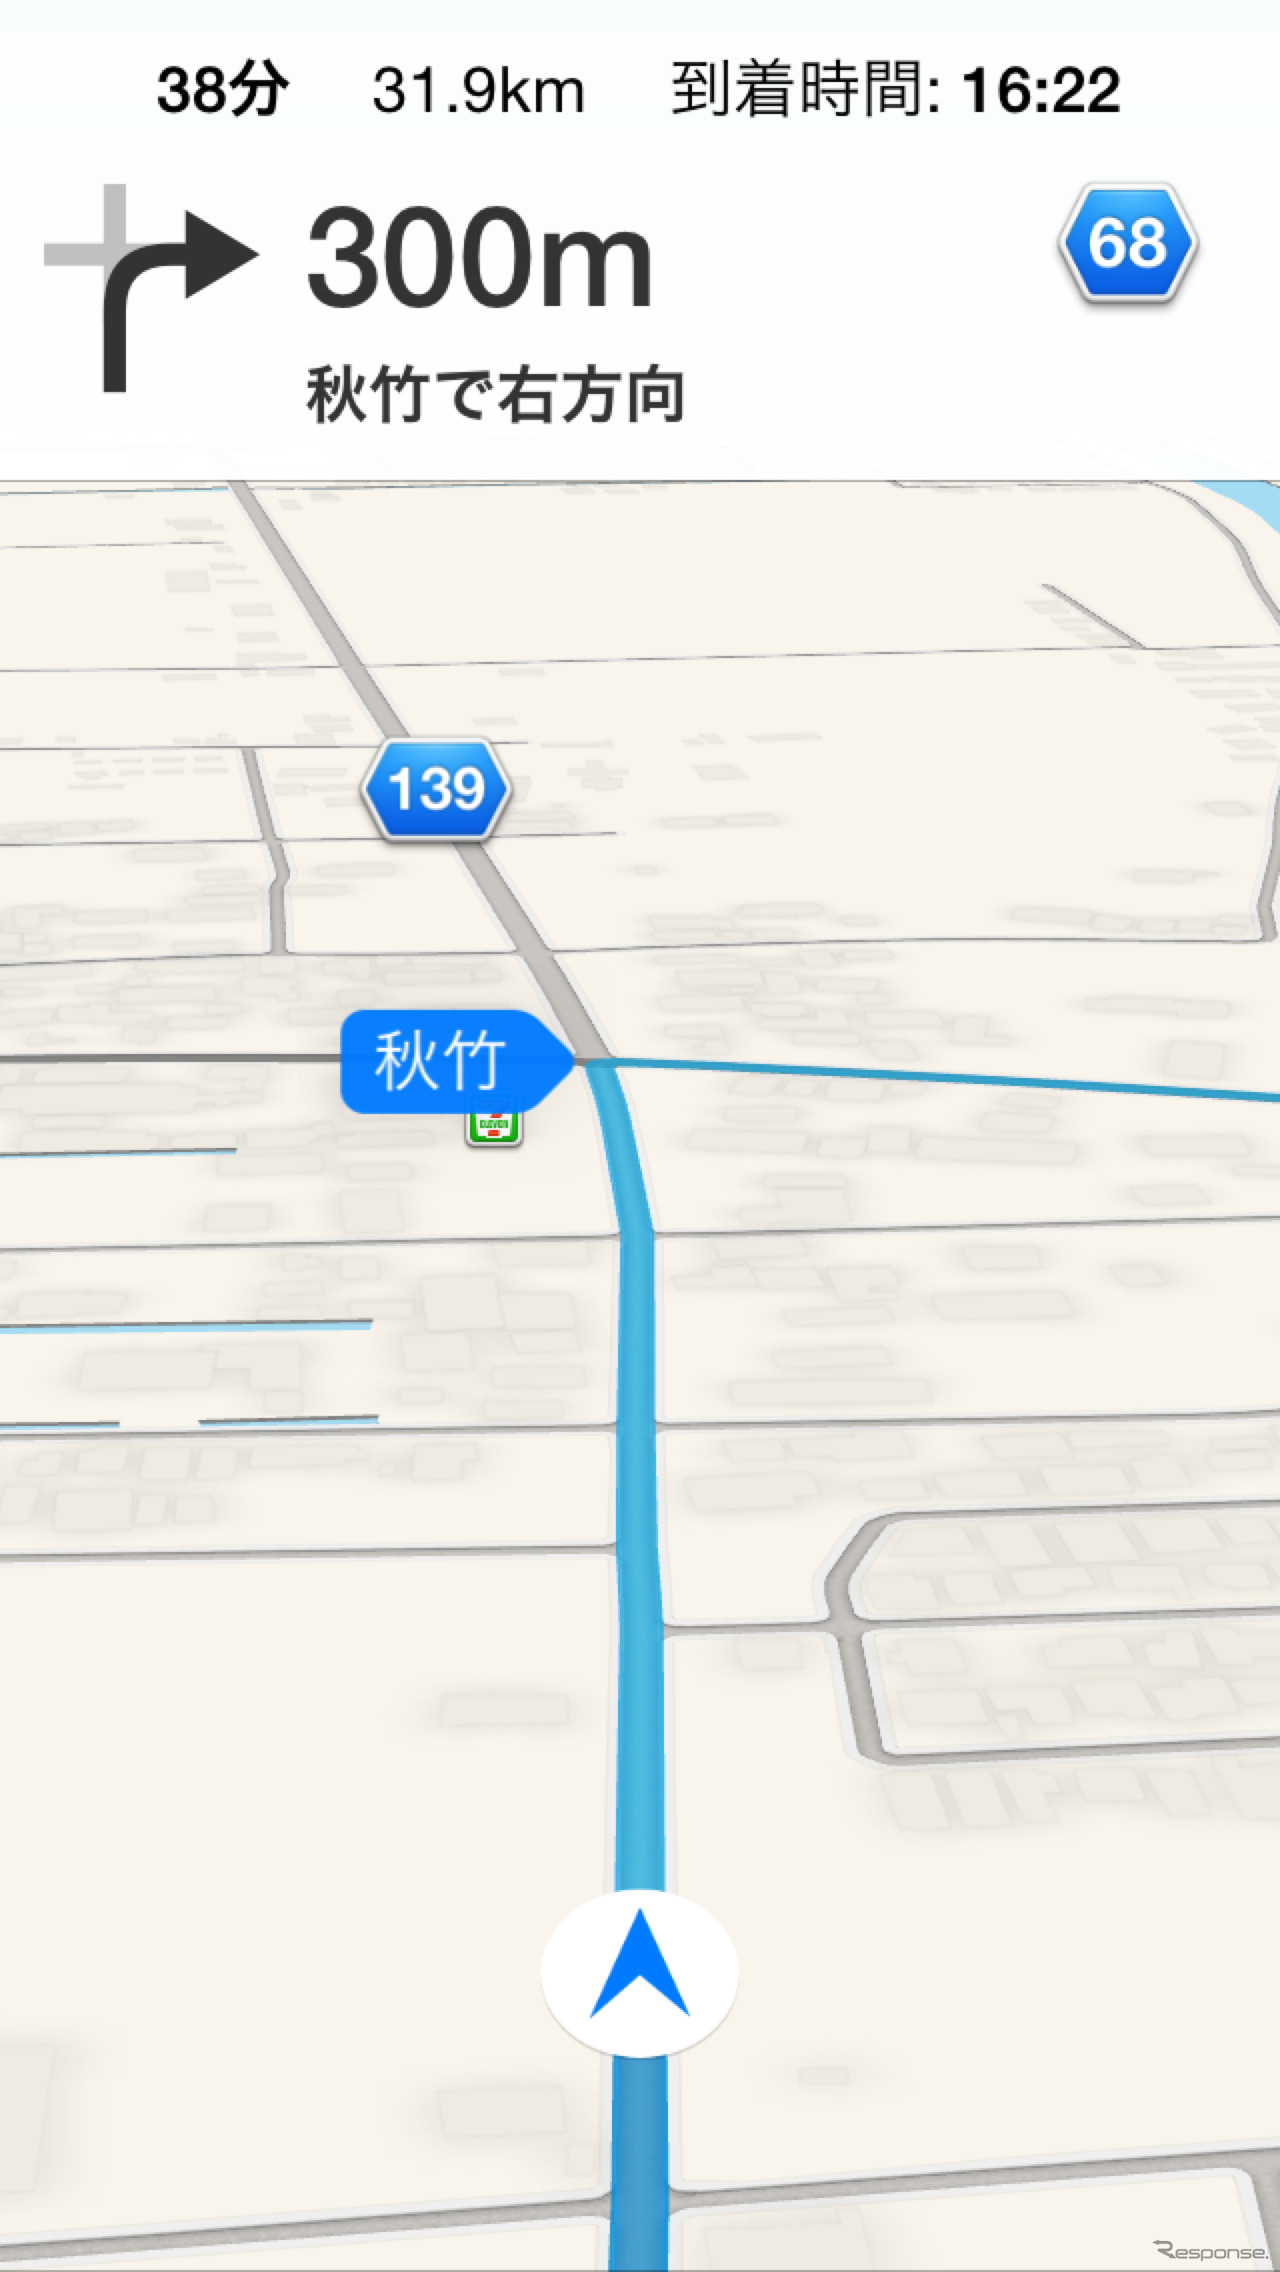 iOS マップで表示が美しいのは都市部だけで、少し郊外に出るとこのように非常にチープな表示になってしまう。iOS マップは3D表示を売り物にしているが、3D表示できるエリアはGoogle Mapsよりずっと狭い。